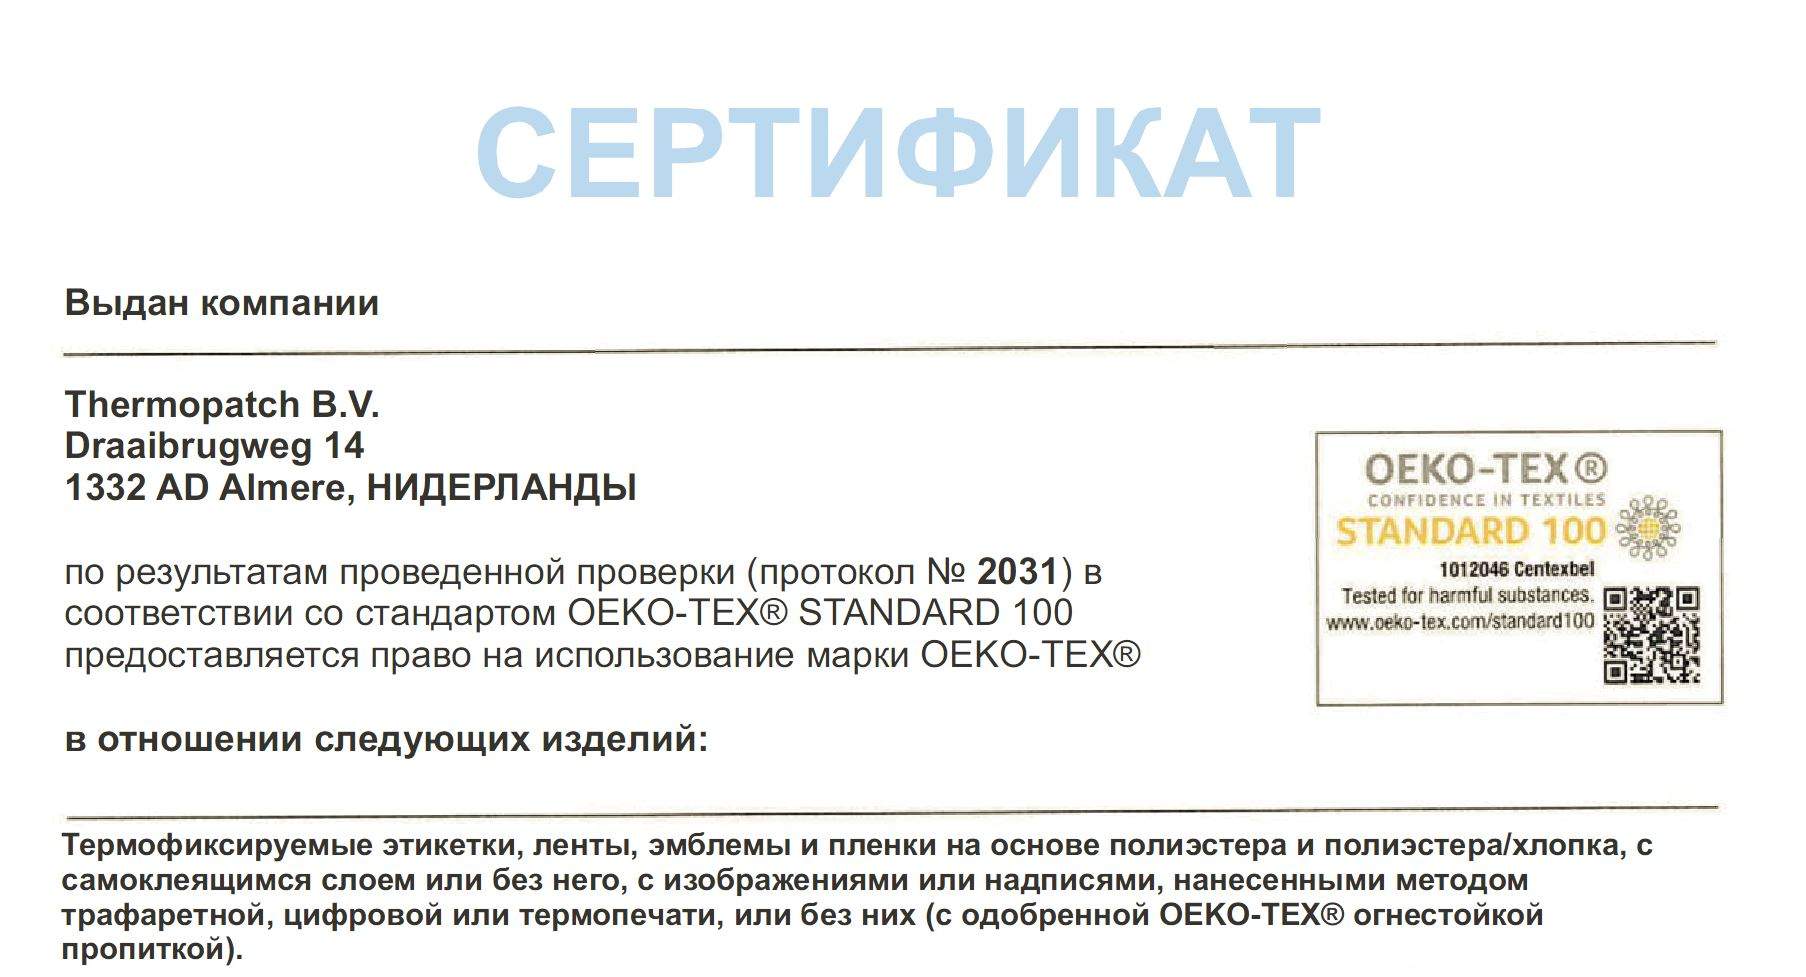 Сертификат предоставляется. Сертификат Оеко-тех 100. Трафаретные документы. Сертификат Оеко Текс.